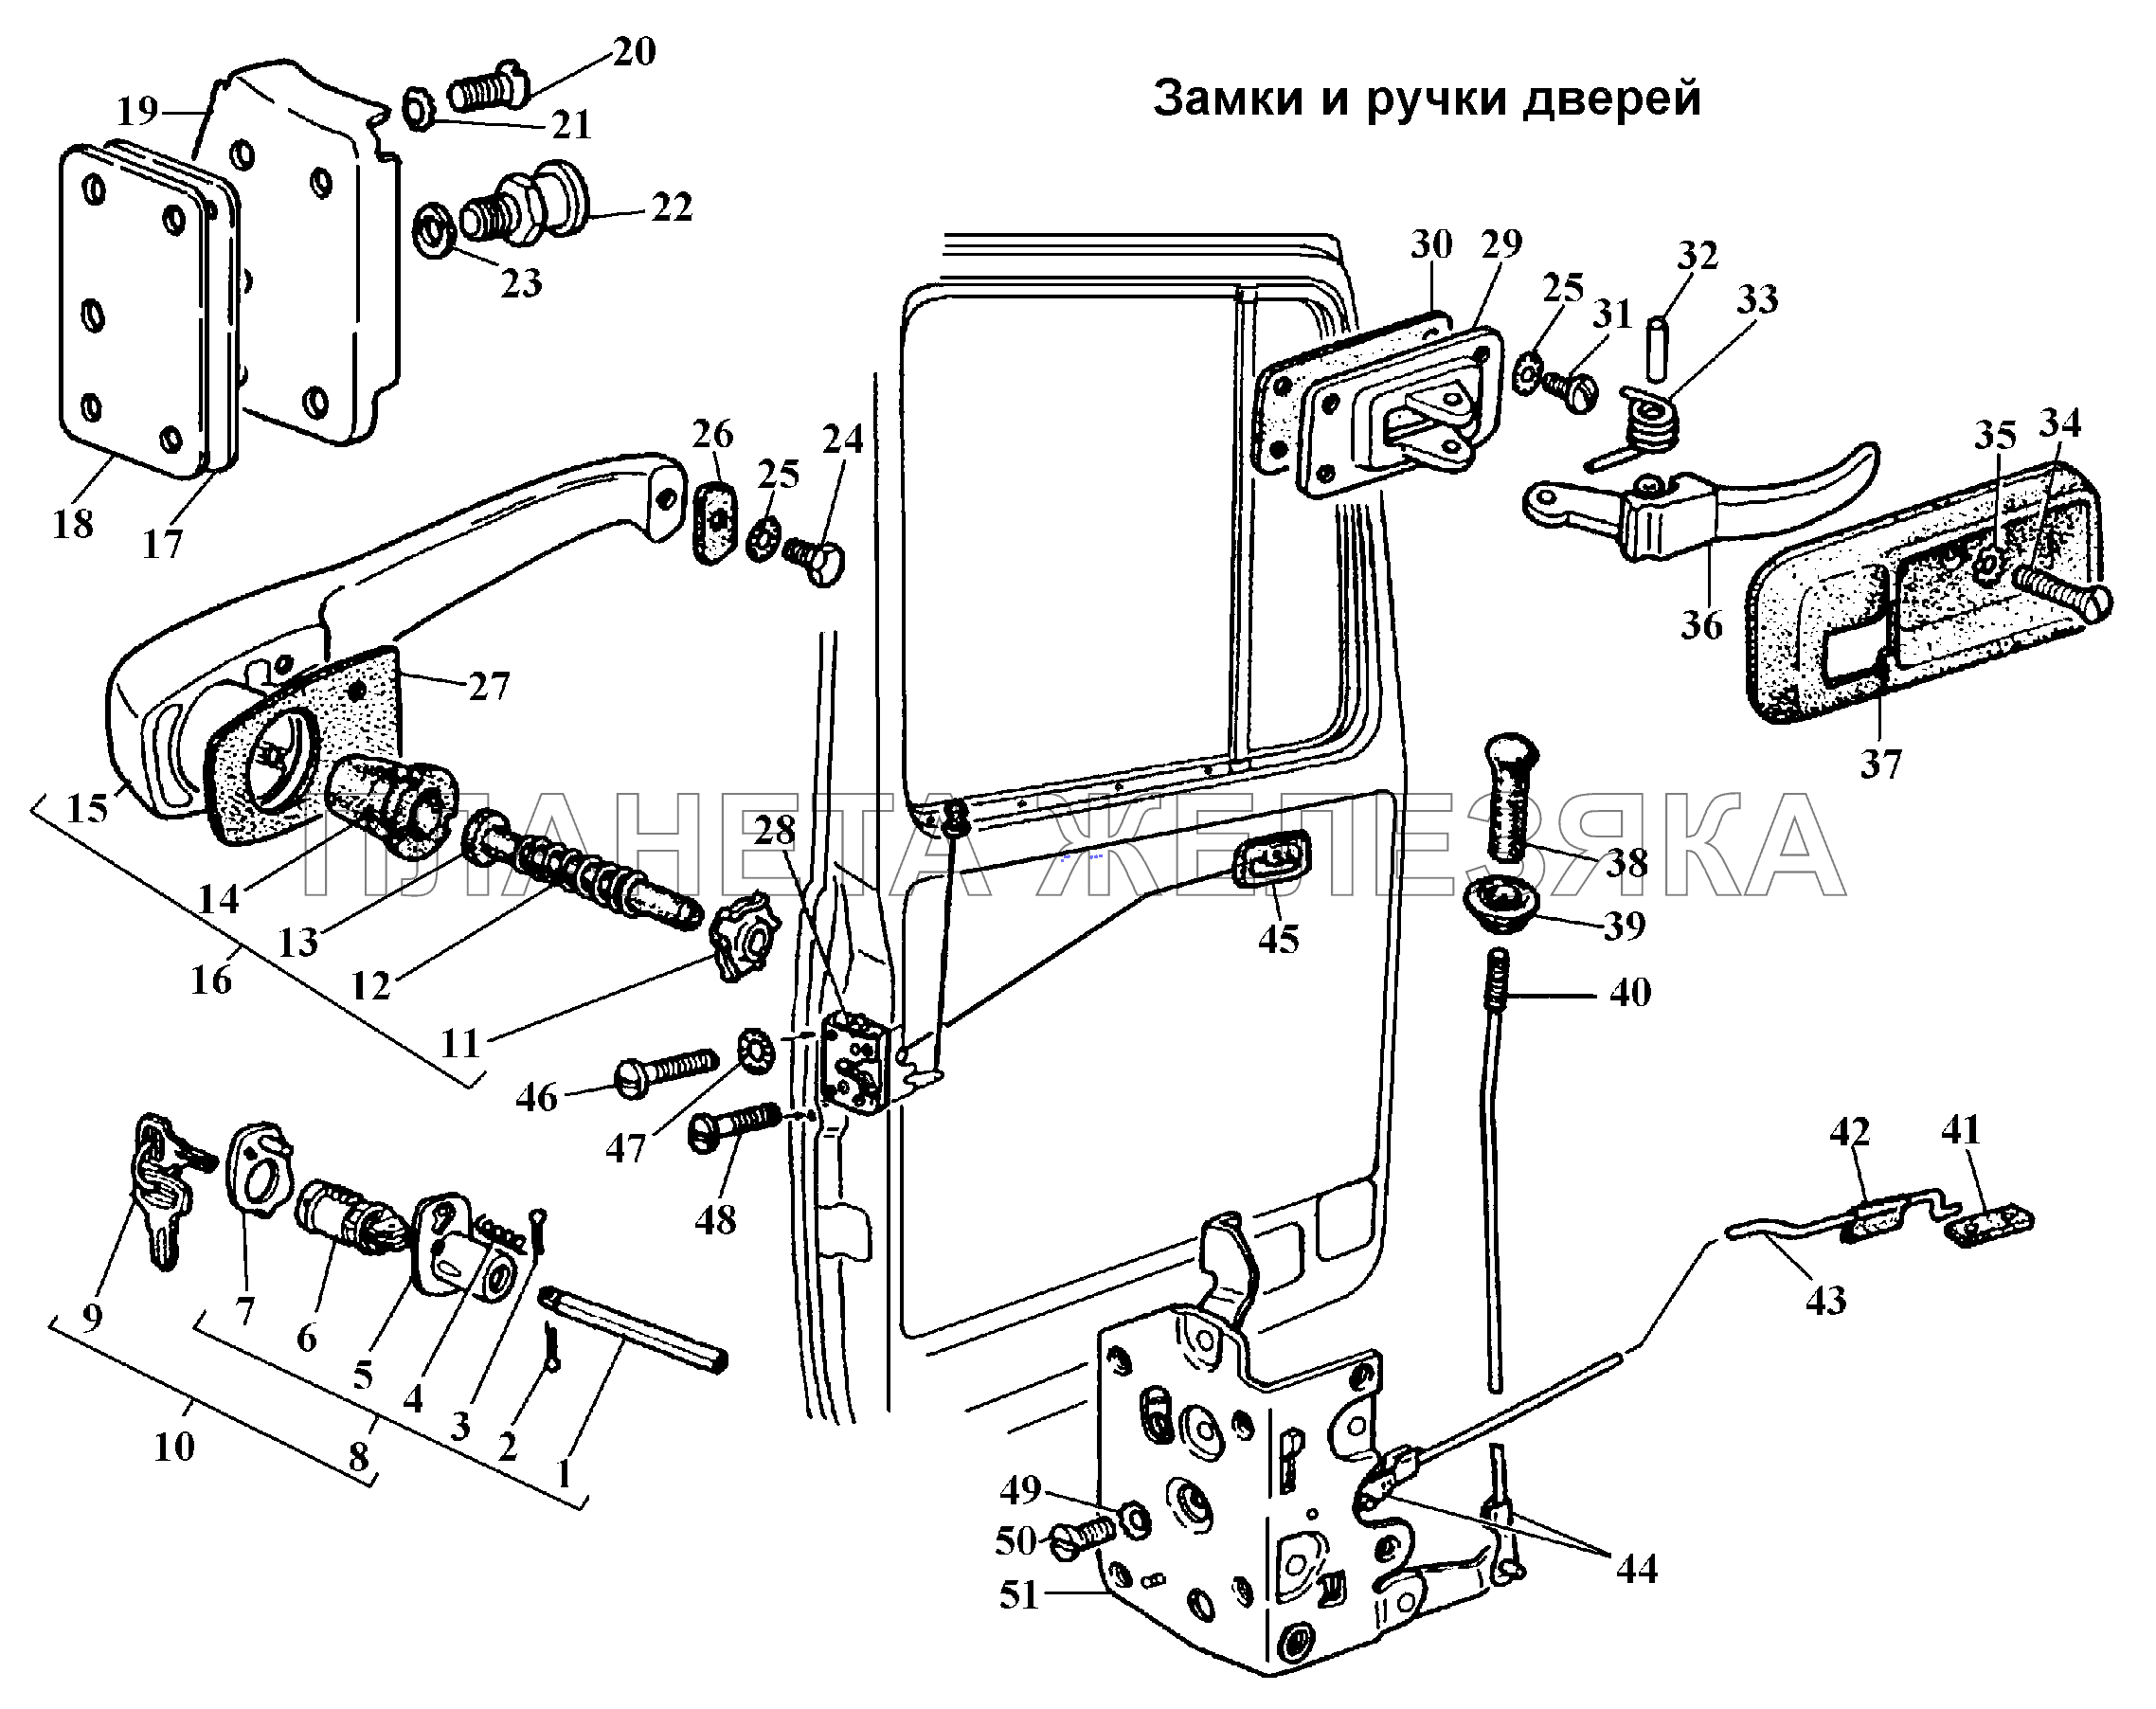 Замки и ручки дверей ГАЗ-3308